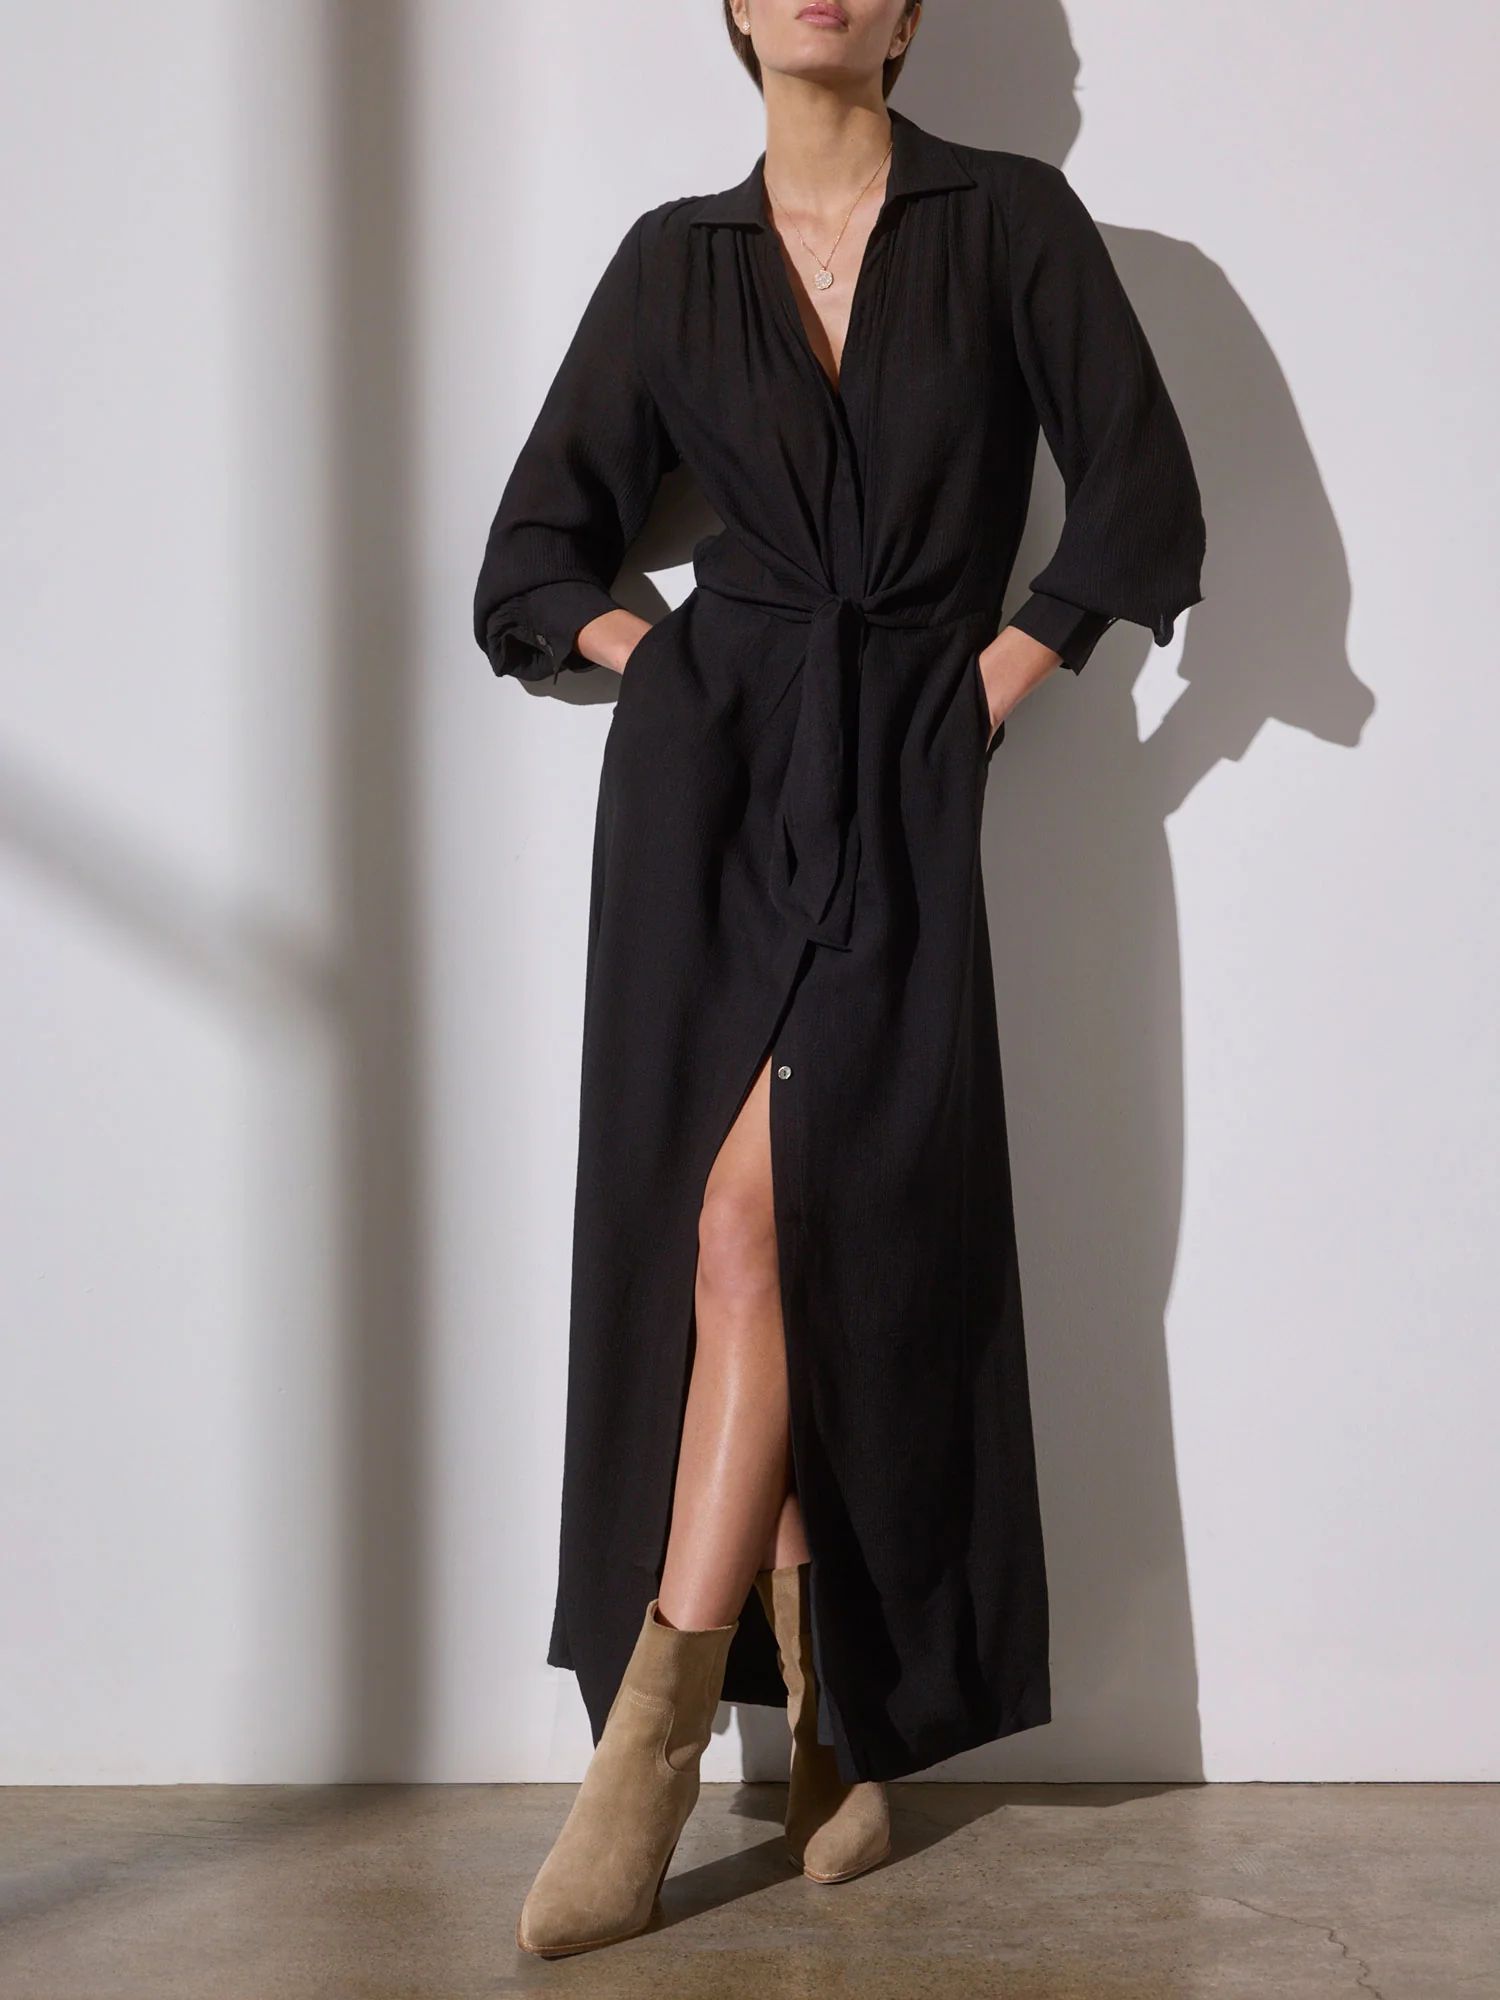 Brochu Walker | Women's Madsen Maxi Dress in Black Onyx | Brochu Walker